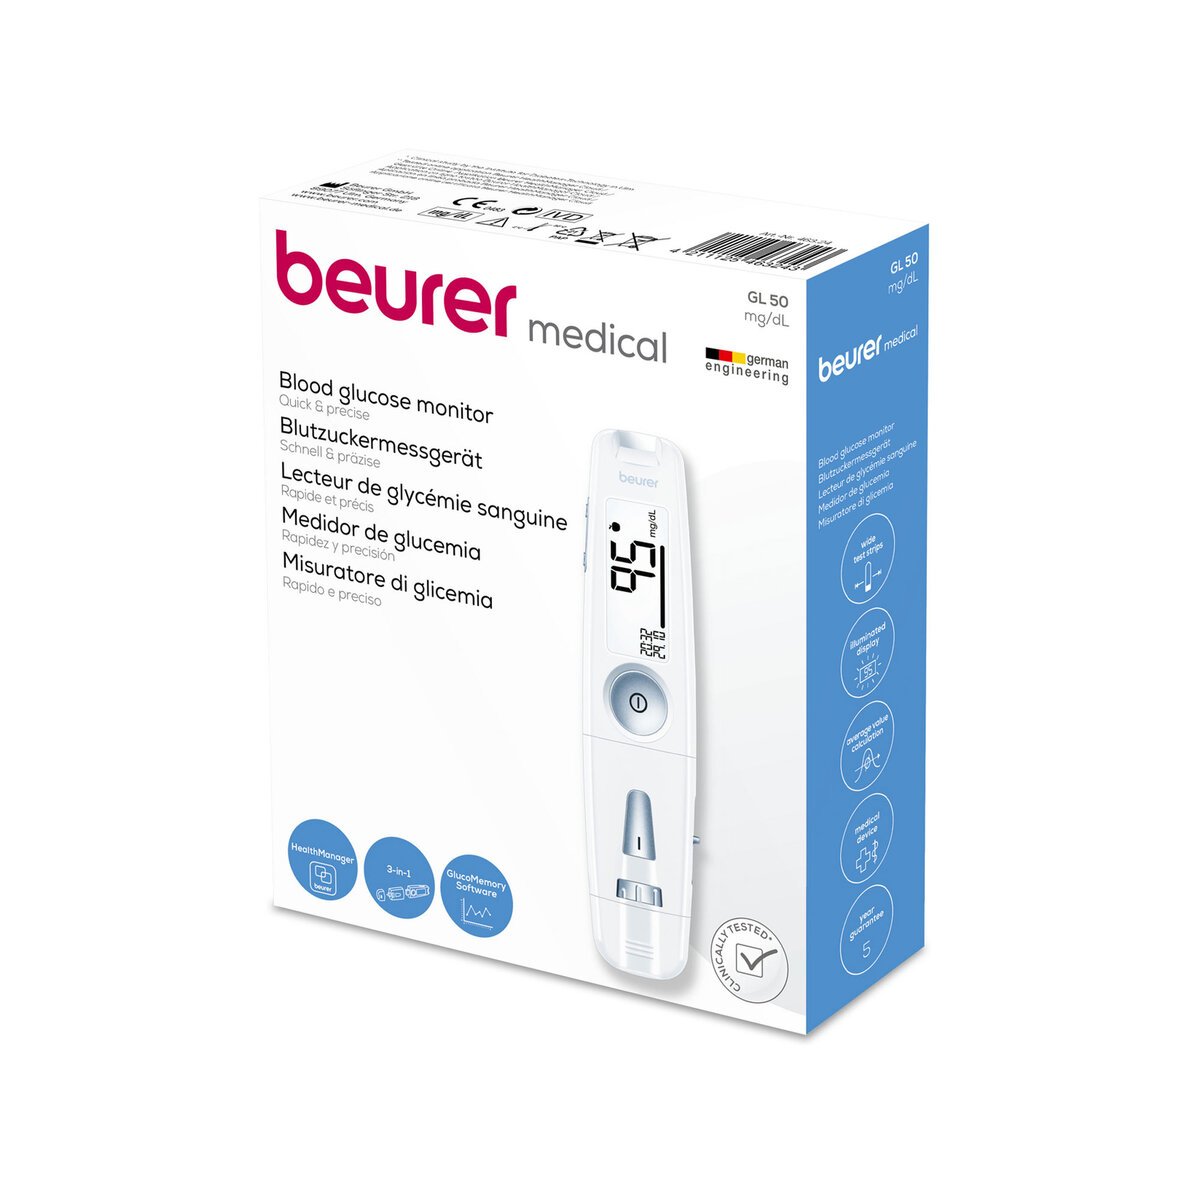 Beurer BP Monitor BM26 + Beurer 3in1 Blood Glucose Monitor GL50 + Test Strip GL50